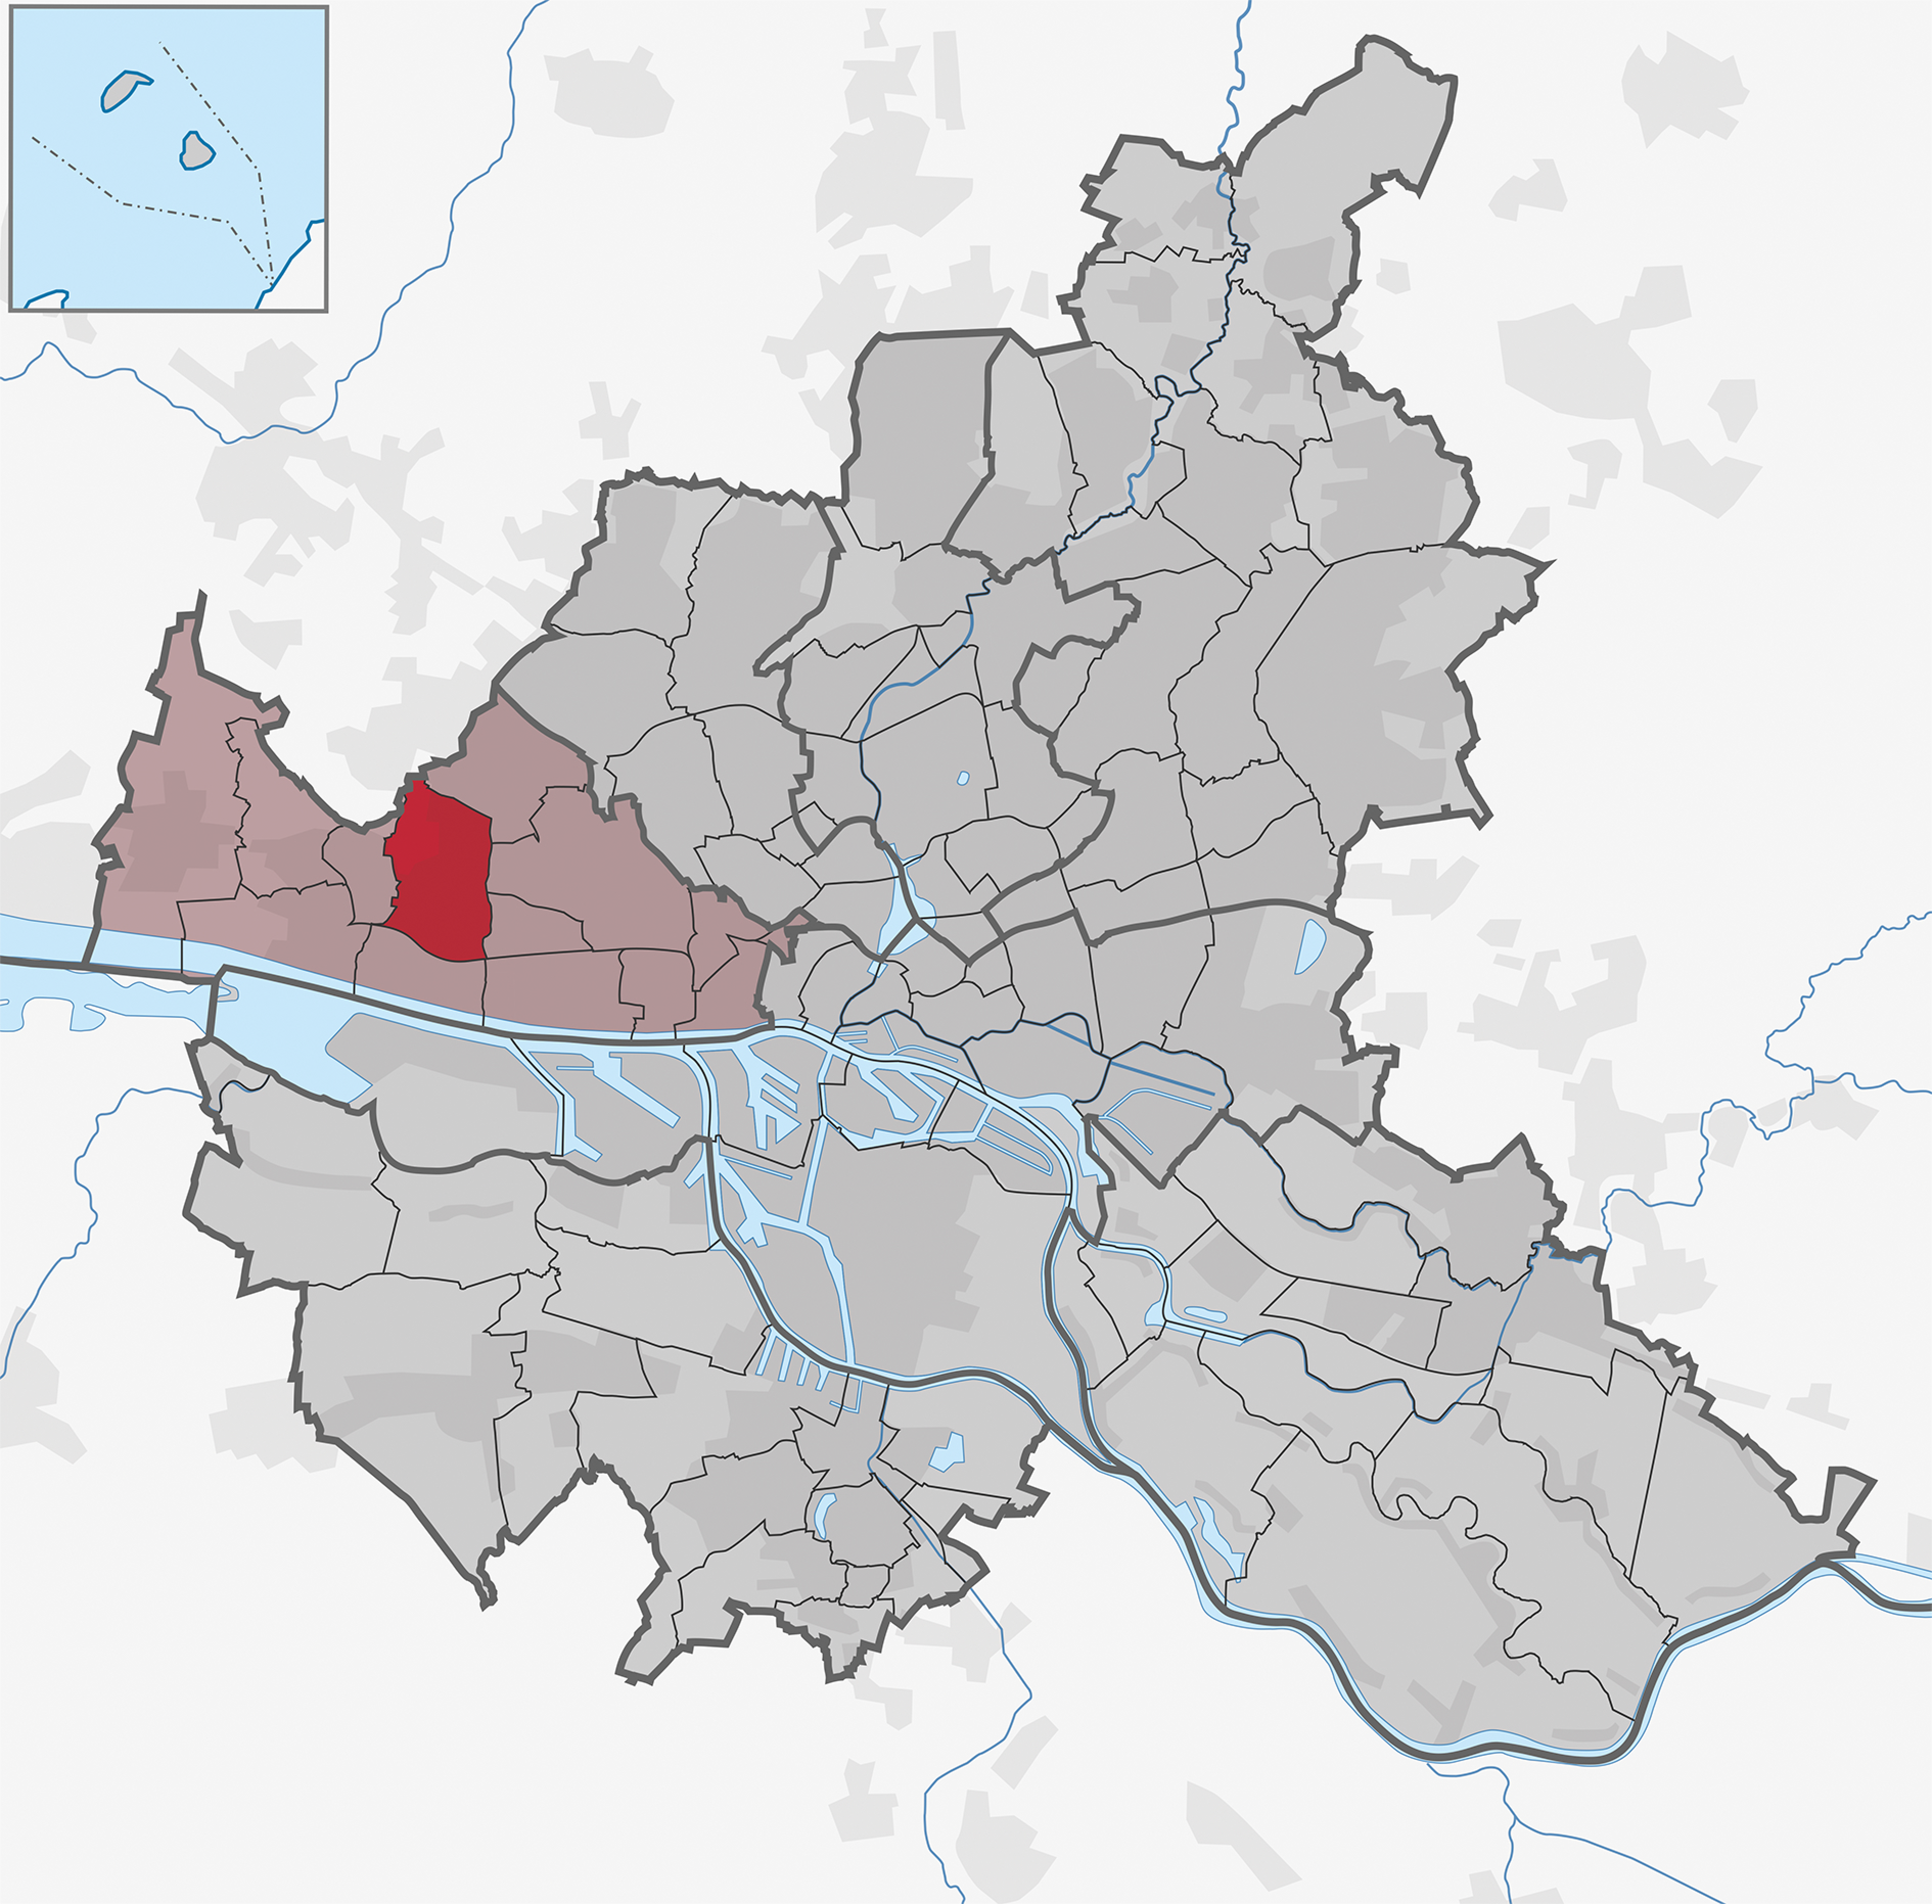 Karte der Bezirke und Stadtteile Hamburgs mit dem Stadtteil Osdorfer Born farblich markiert. Der Stadtteil ist am westlichen Stadtrand im Bezirk Altona.